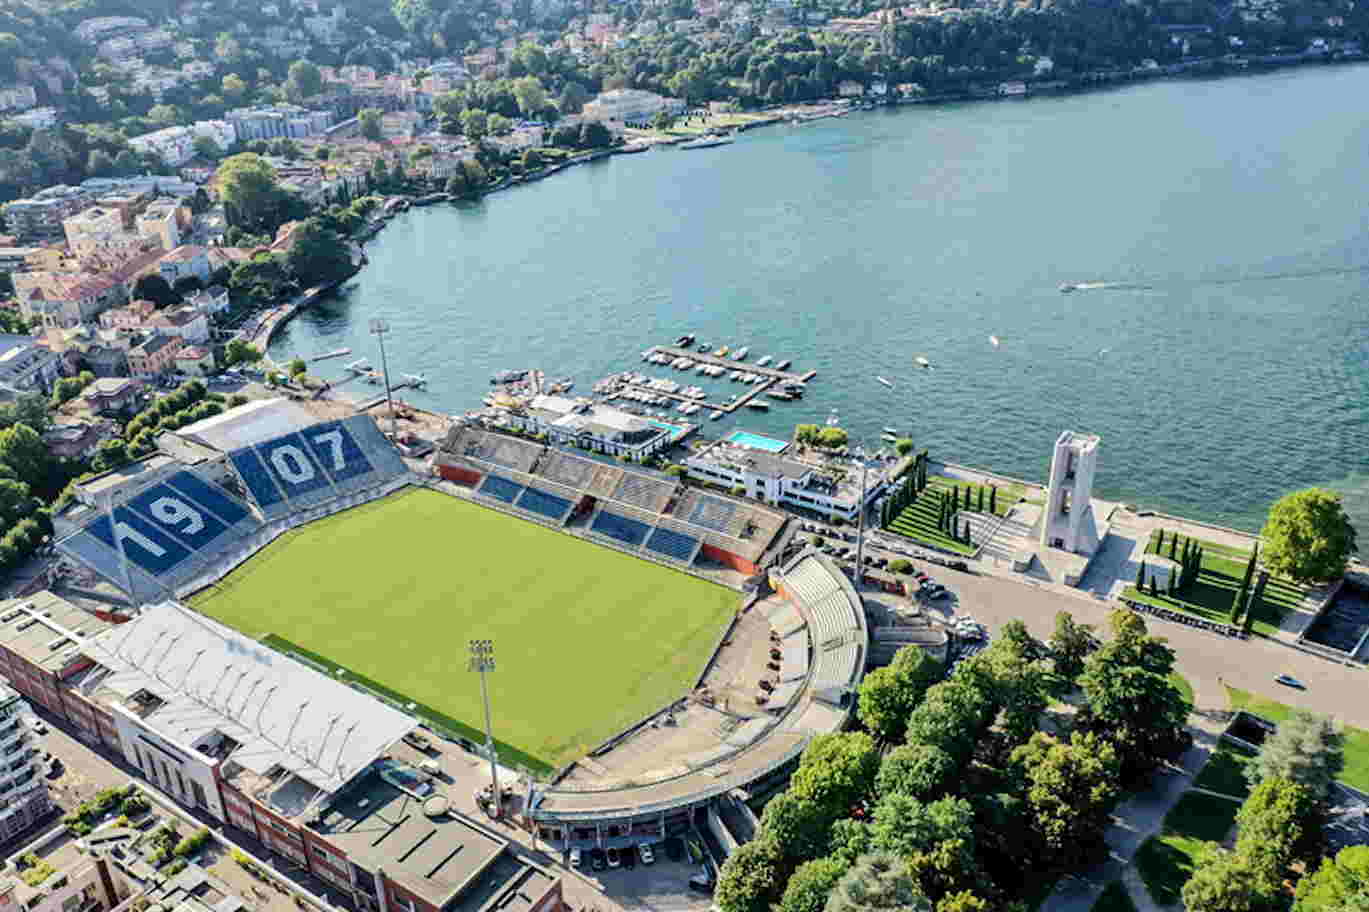 LIVE: Como 1907 - FC Lugano 